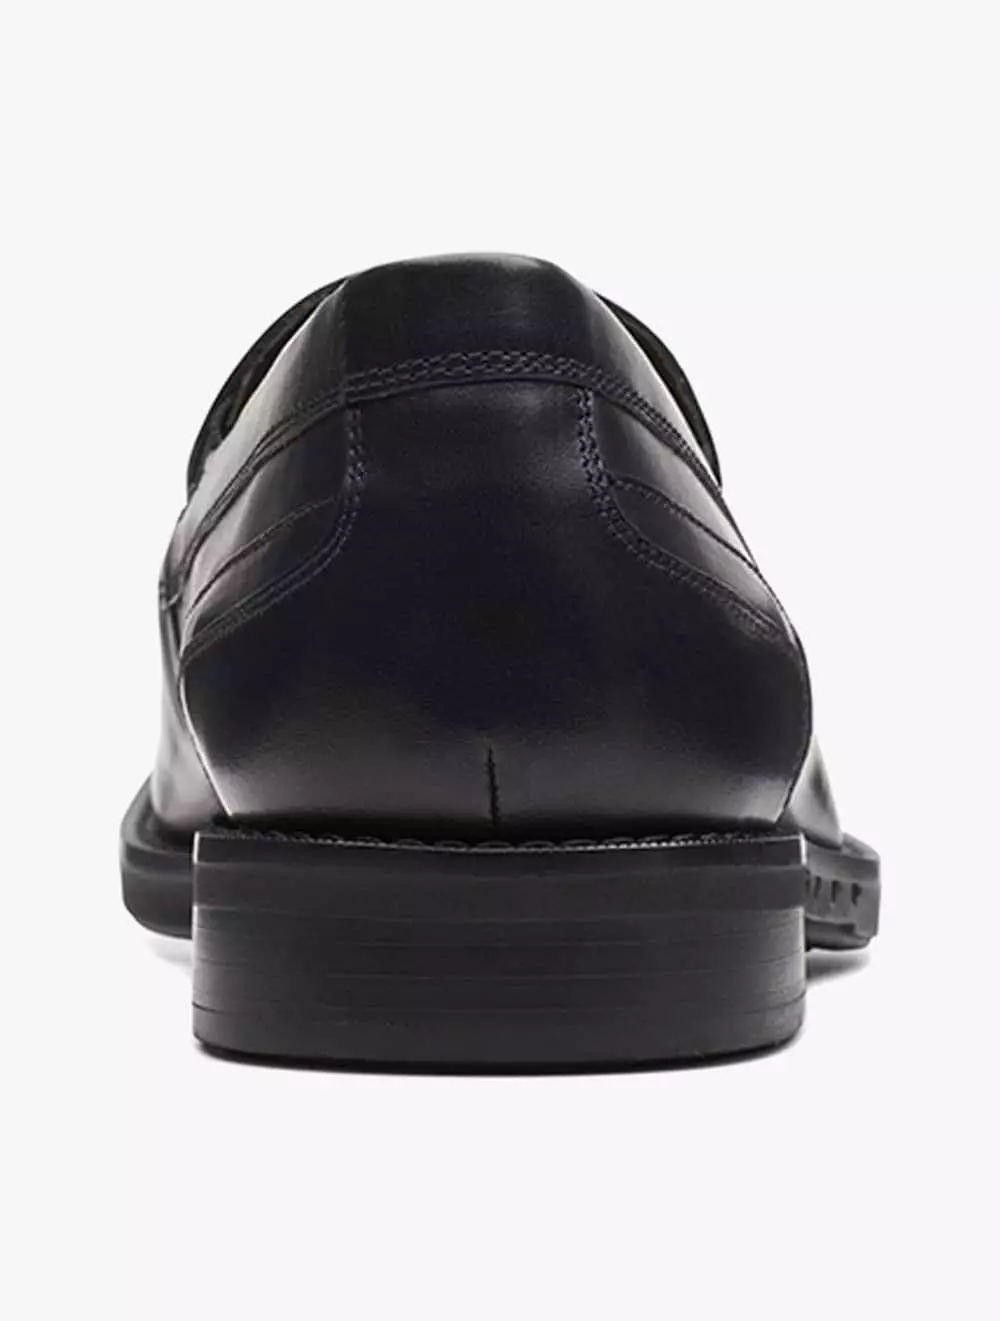 Jual Clarks Clarks Un Hugh Step Men's Shoes- Black Leather Original ...